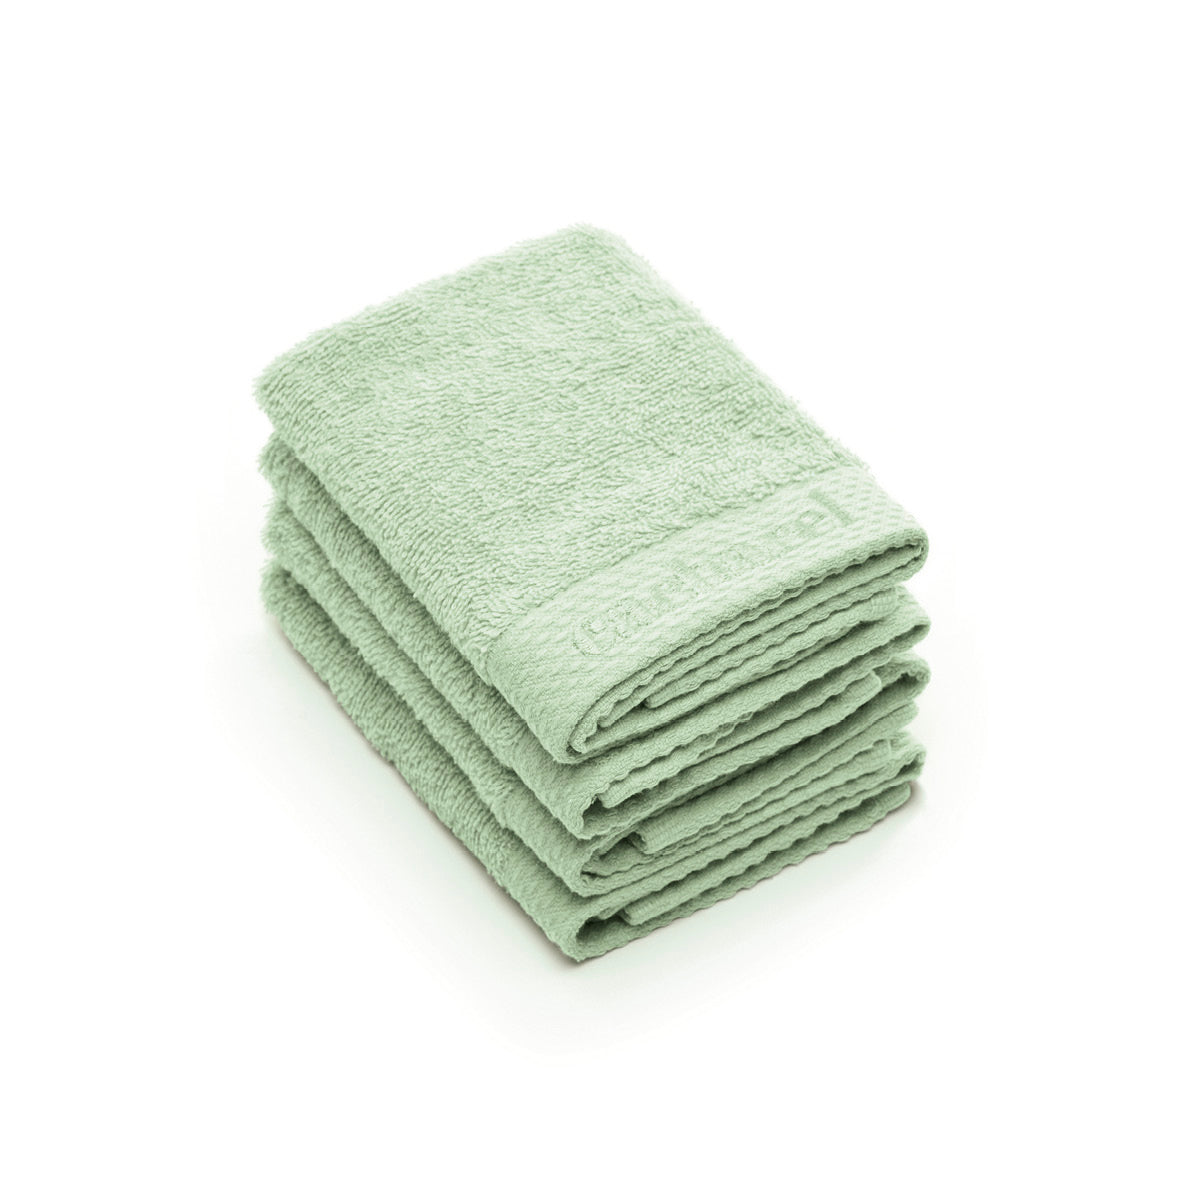 4 guest towels - 30 x 30 cm